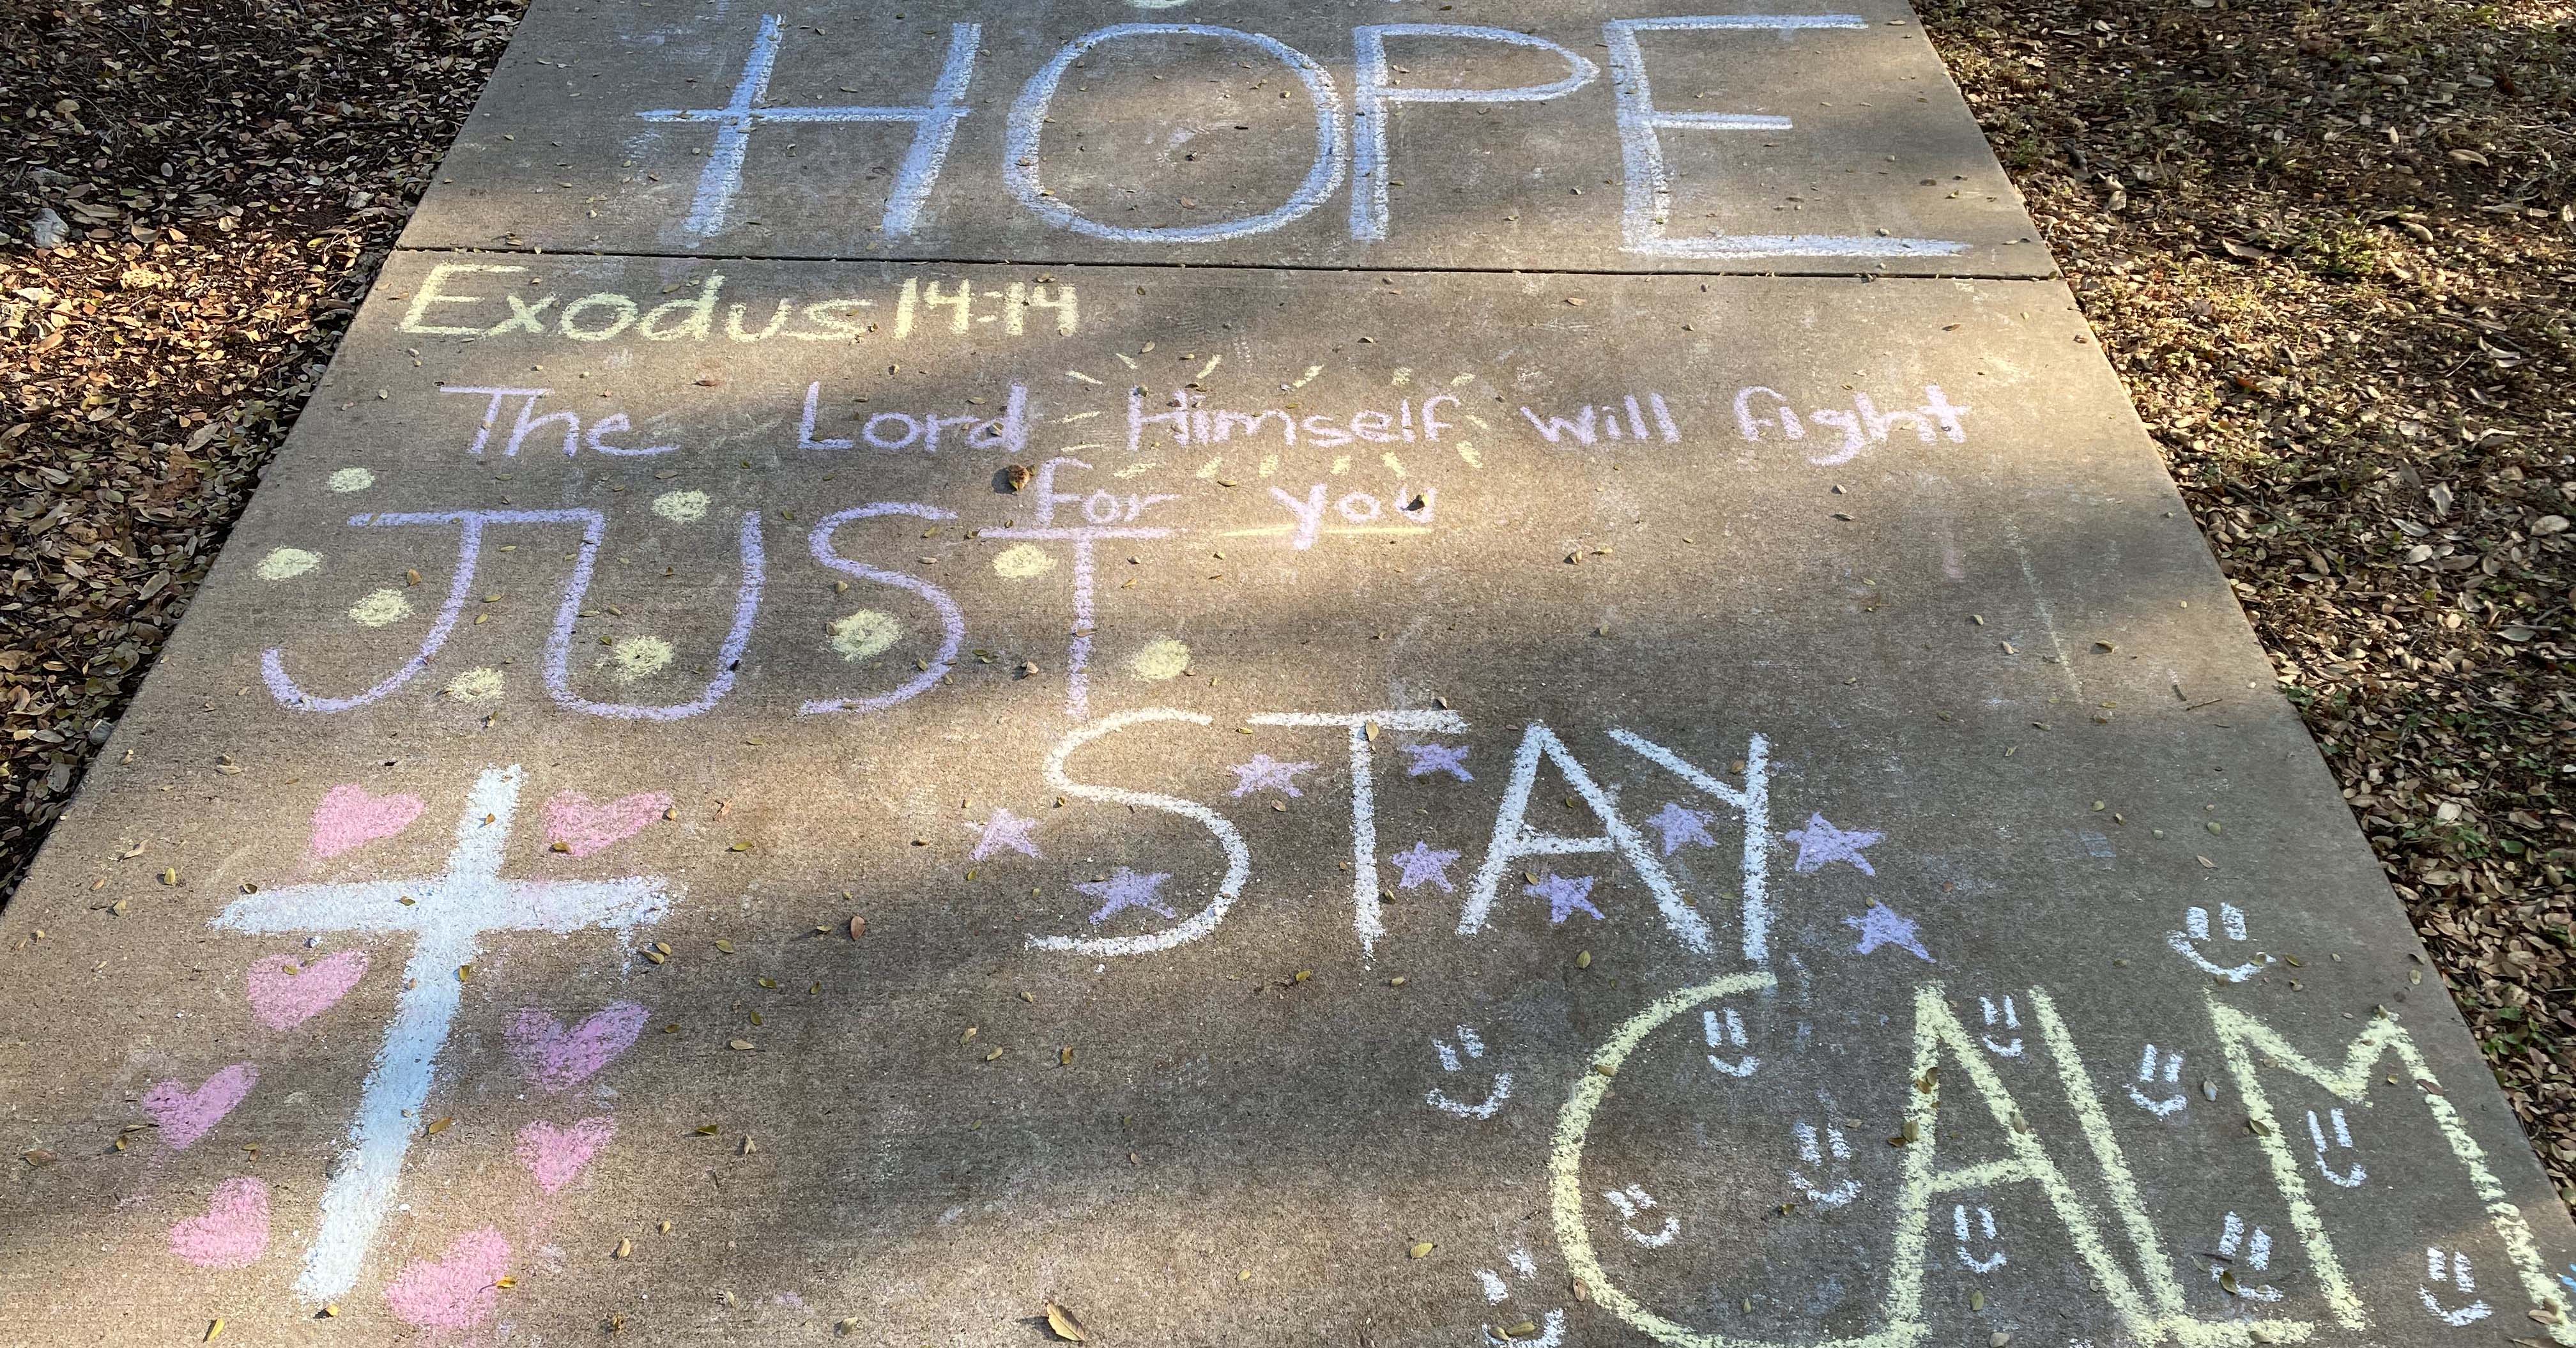 Message written on sidewalk in chalk